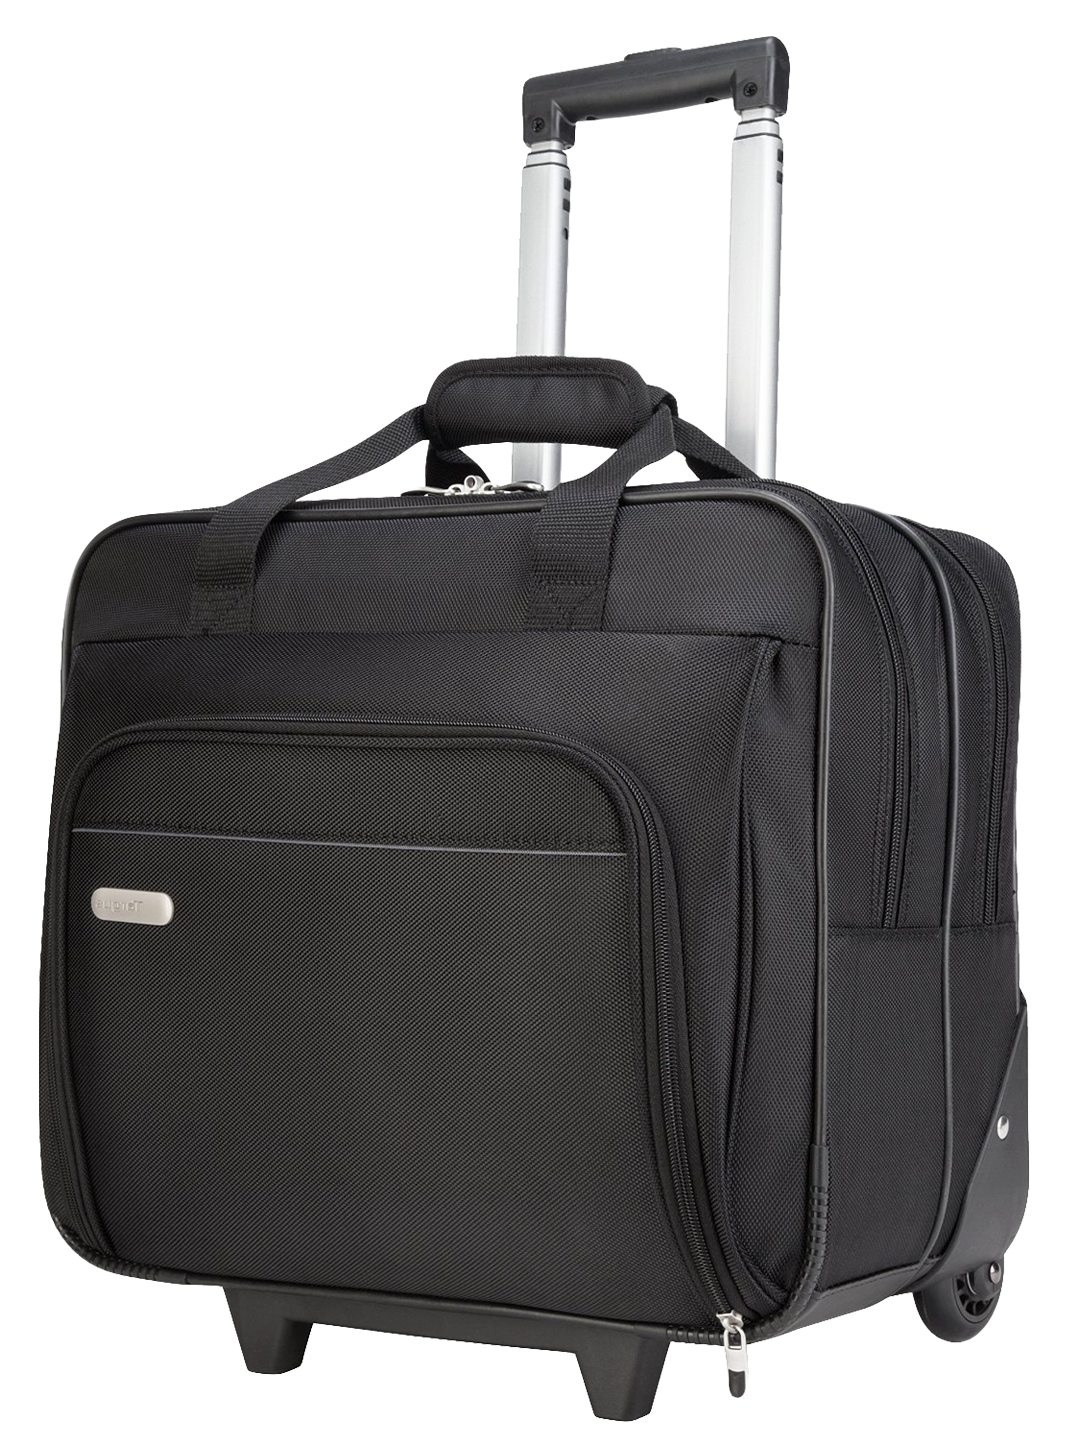 Luggage Handbag Knapsack Bag Package PNG